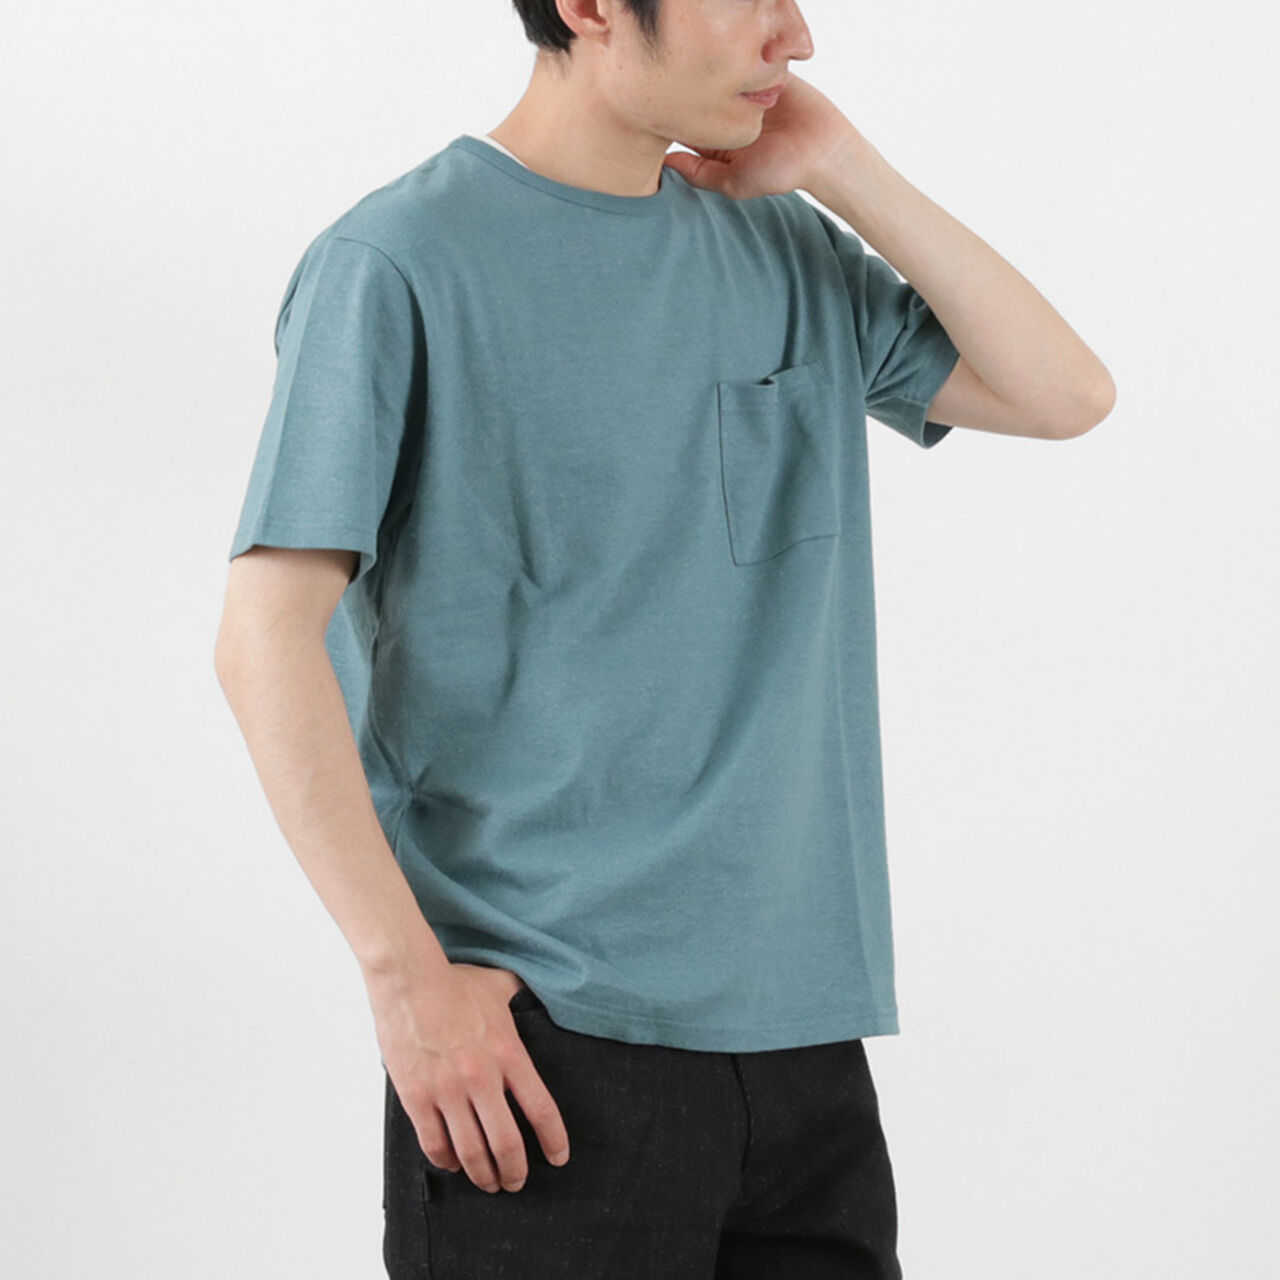 10oz Basic Fit Pocket T-Shirt,Teal, large image number 0